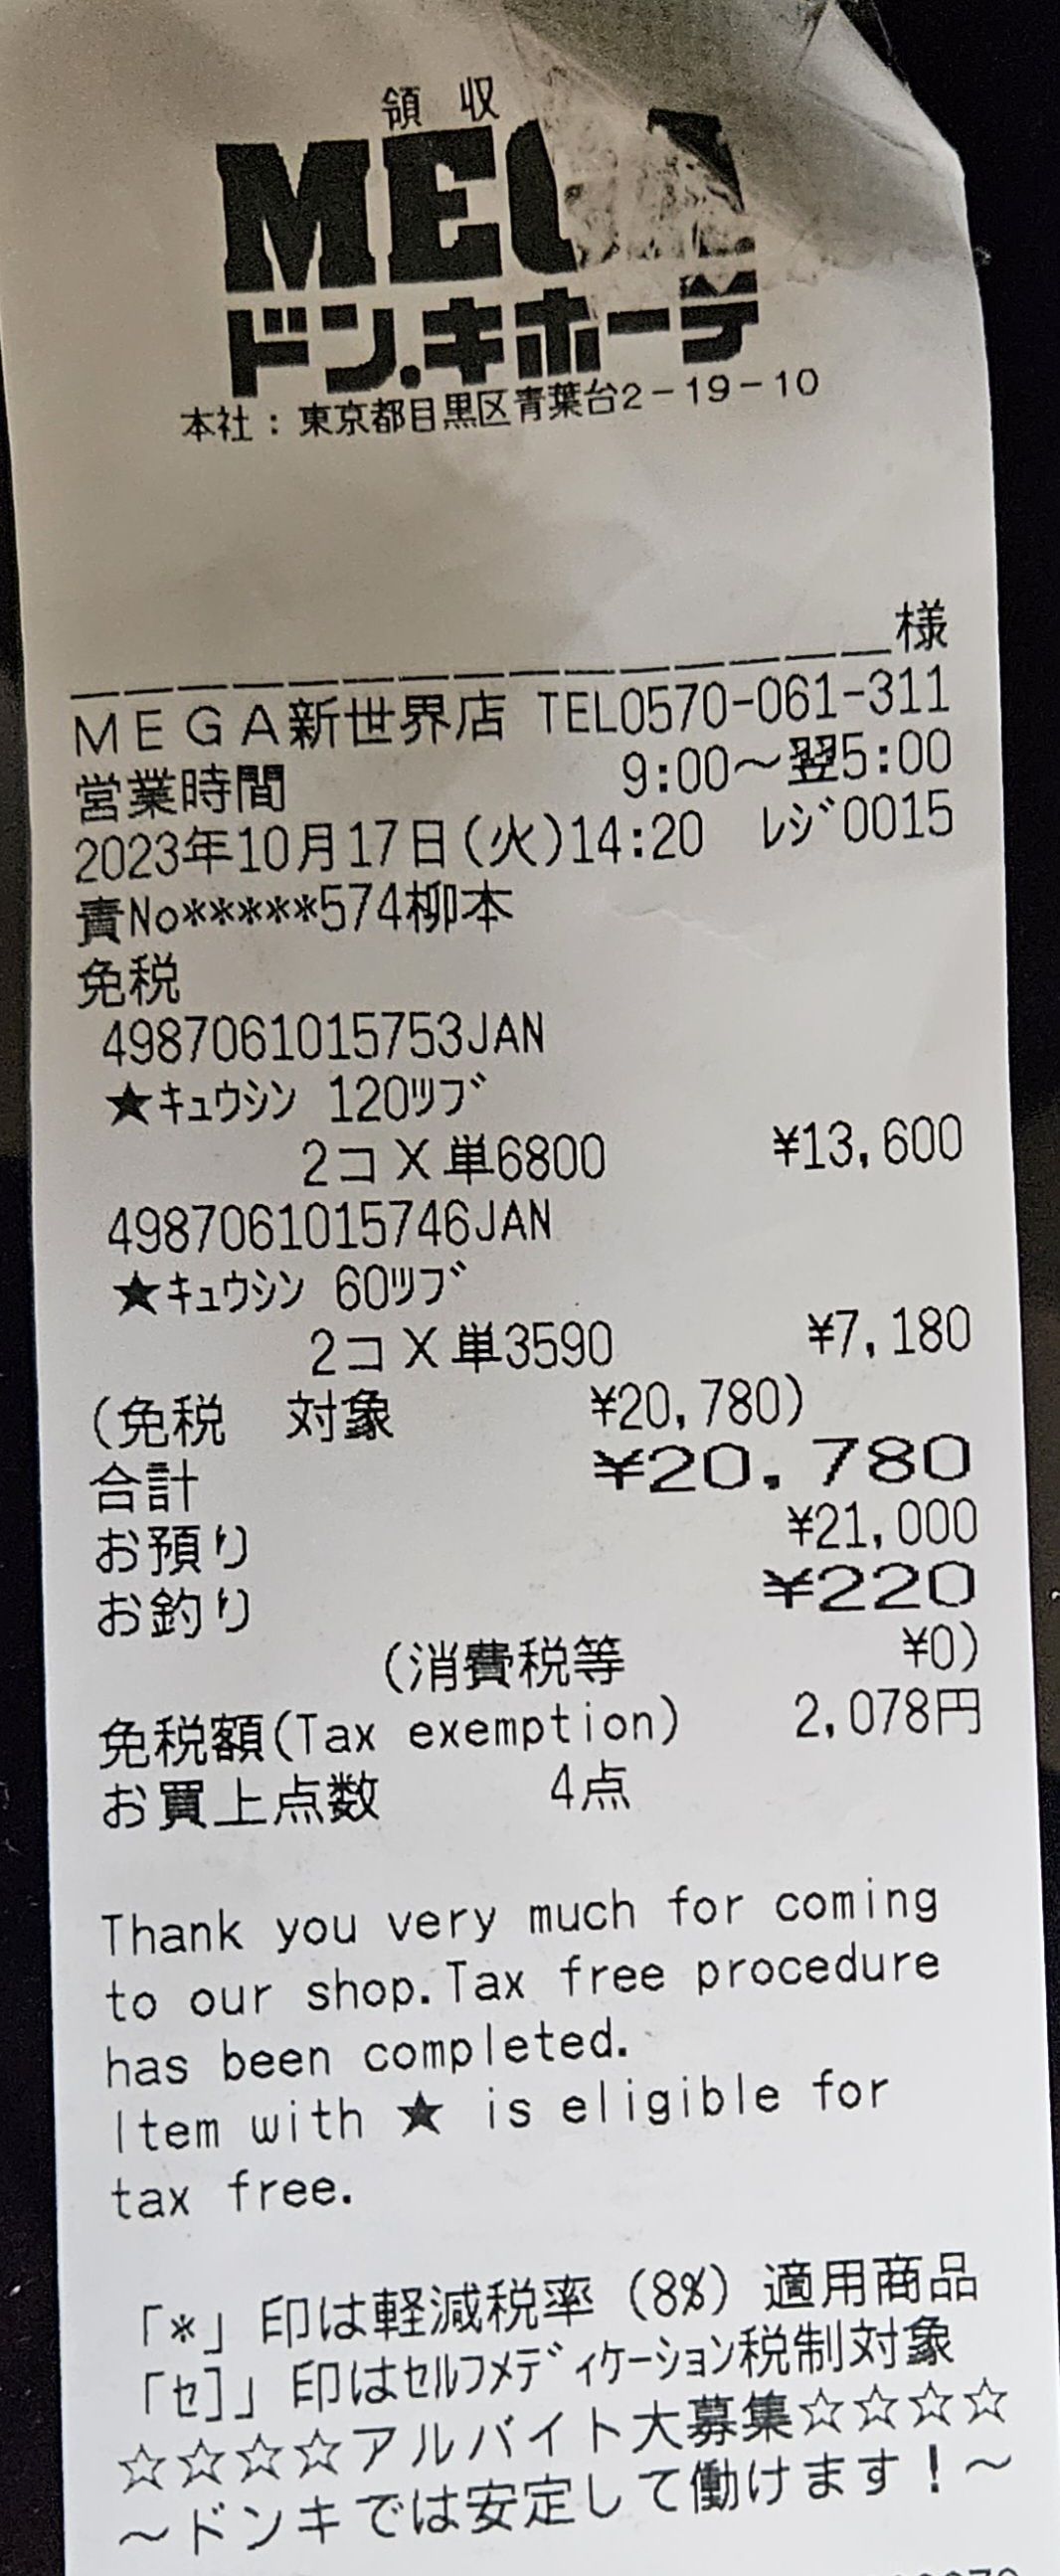 일본에서 구매한 구심 가격이 나온 영수증